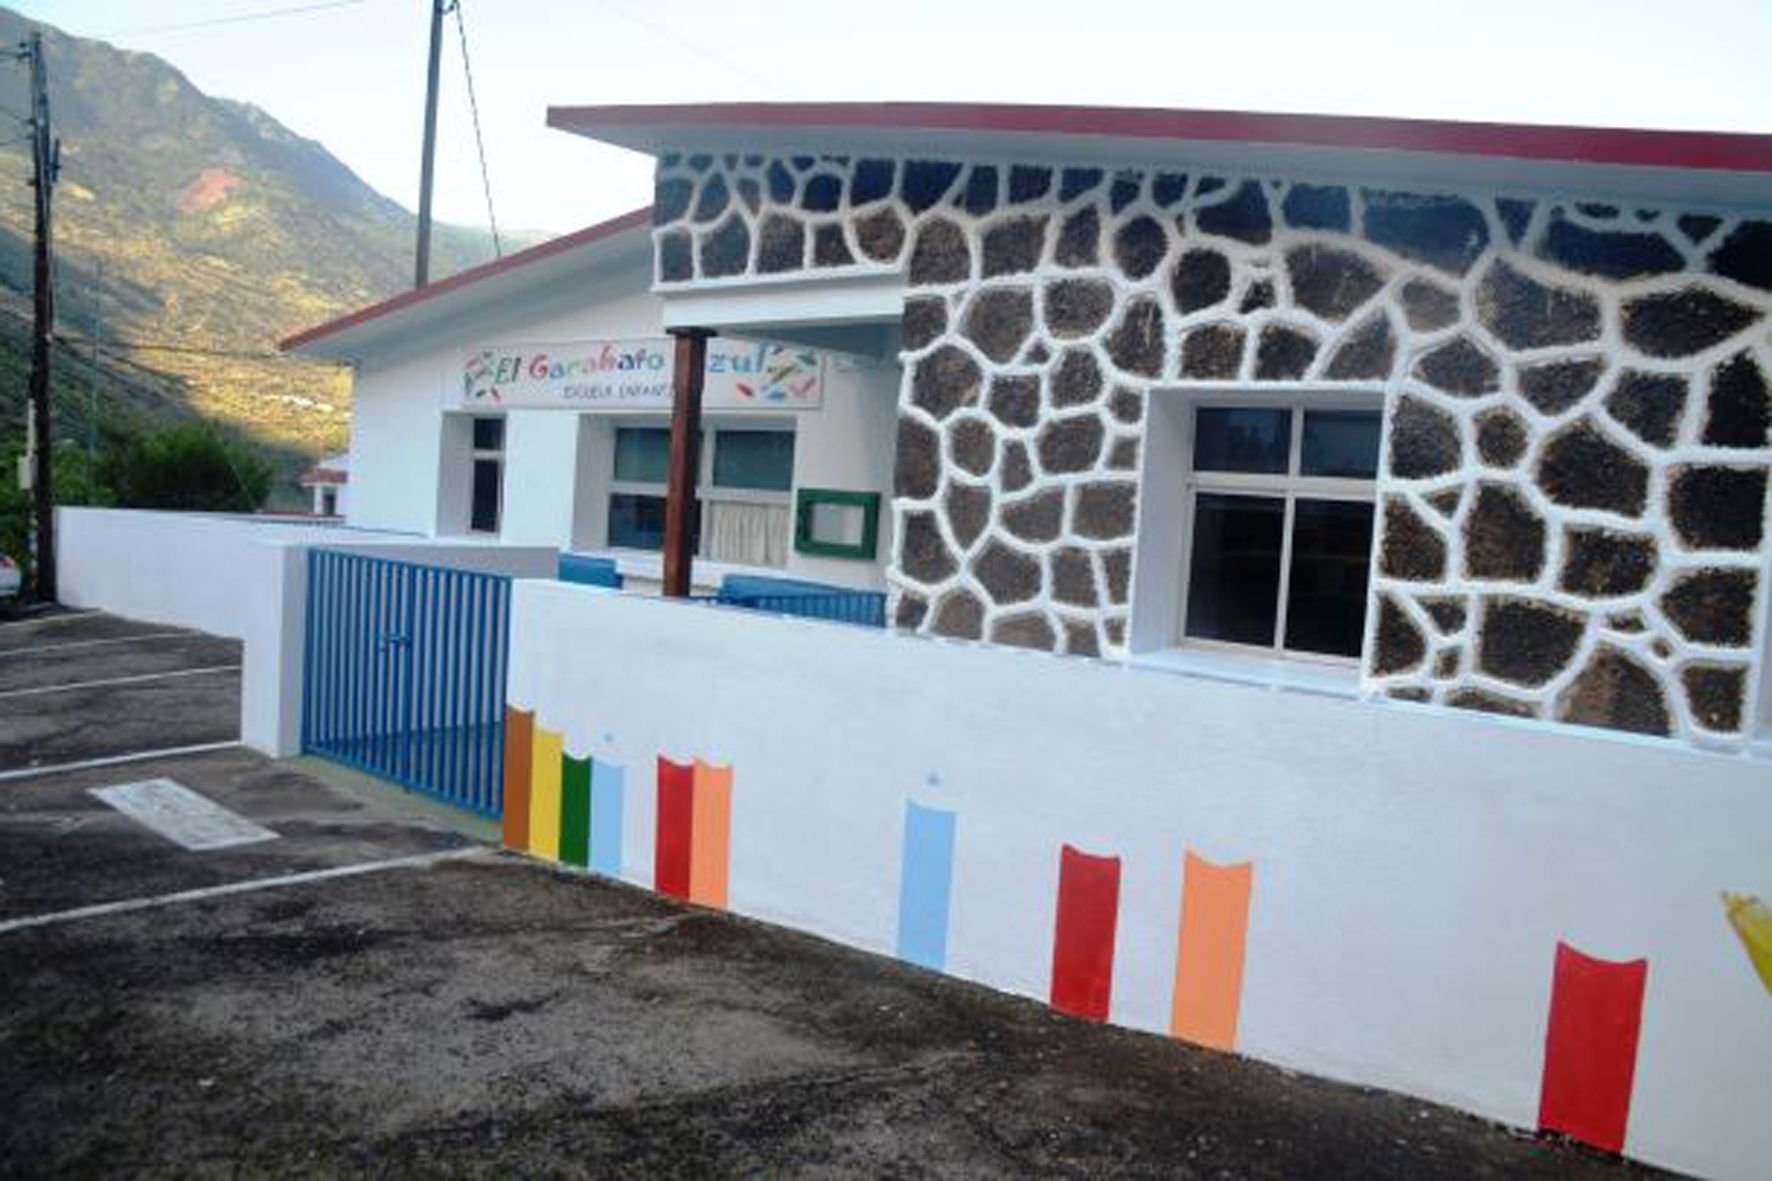 La Escuela Infantil “El Garabato Azul” participa en el proyecto “Bicácaro”